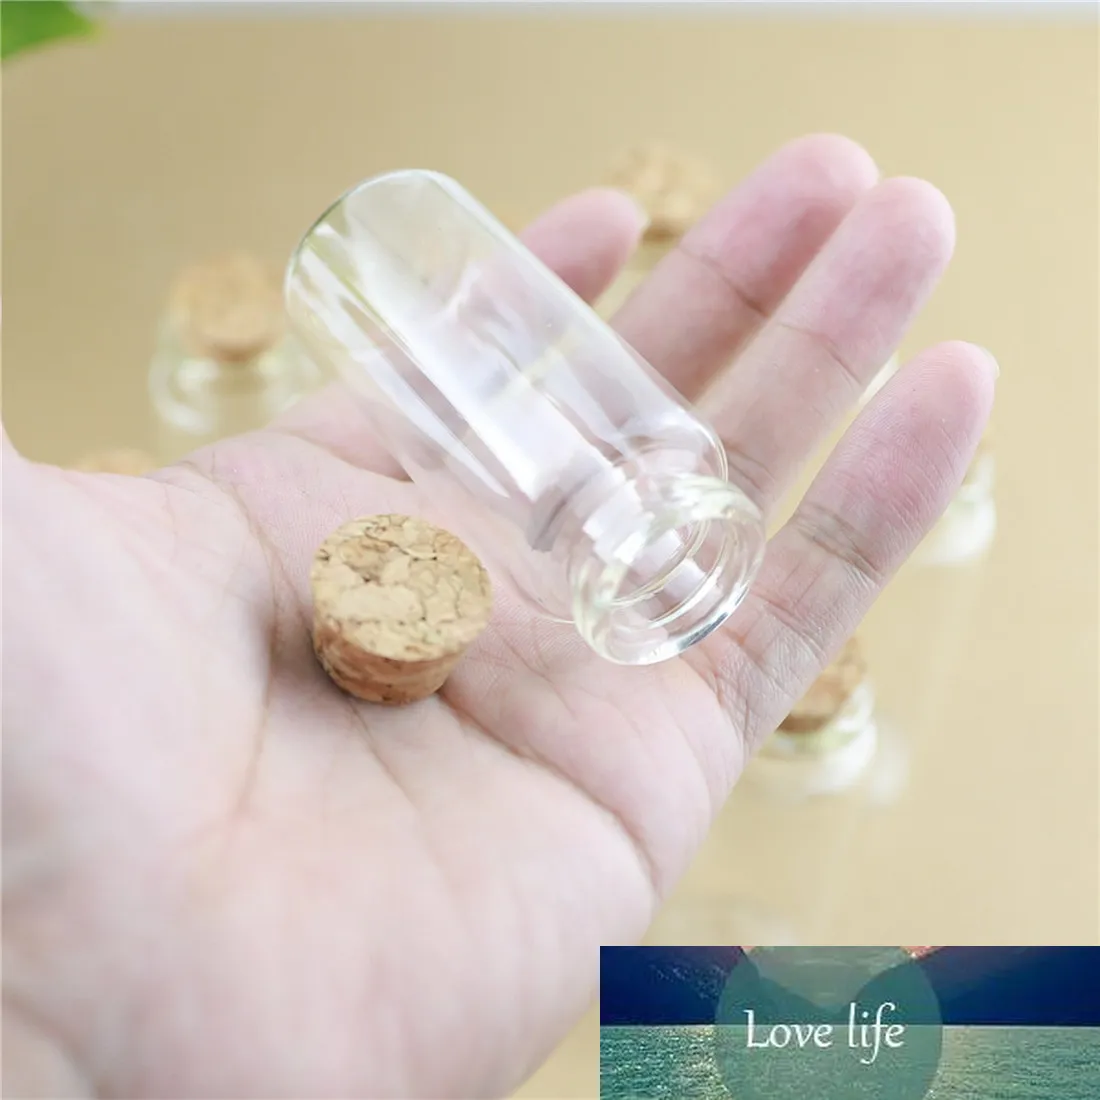 50 teile/los 30*70mm 30 ml DIY Mini Wishing Glasflaschen Kork Handwerk Gläser Korken Transparent Leere glasflaschen